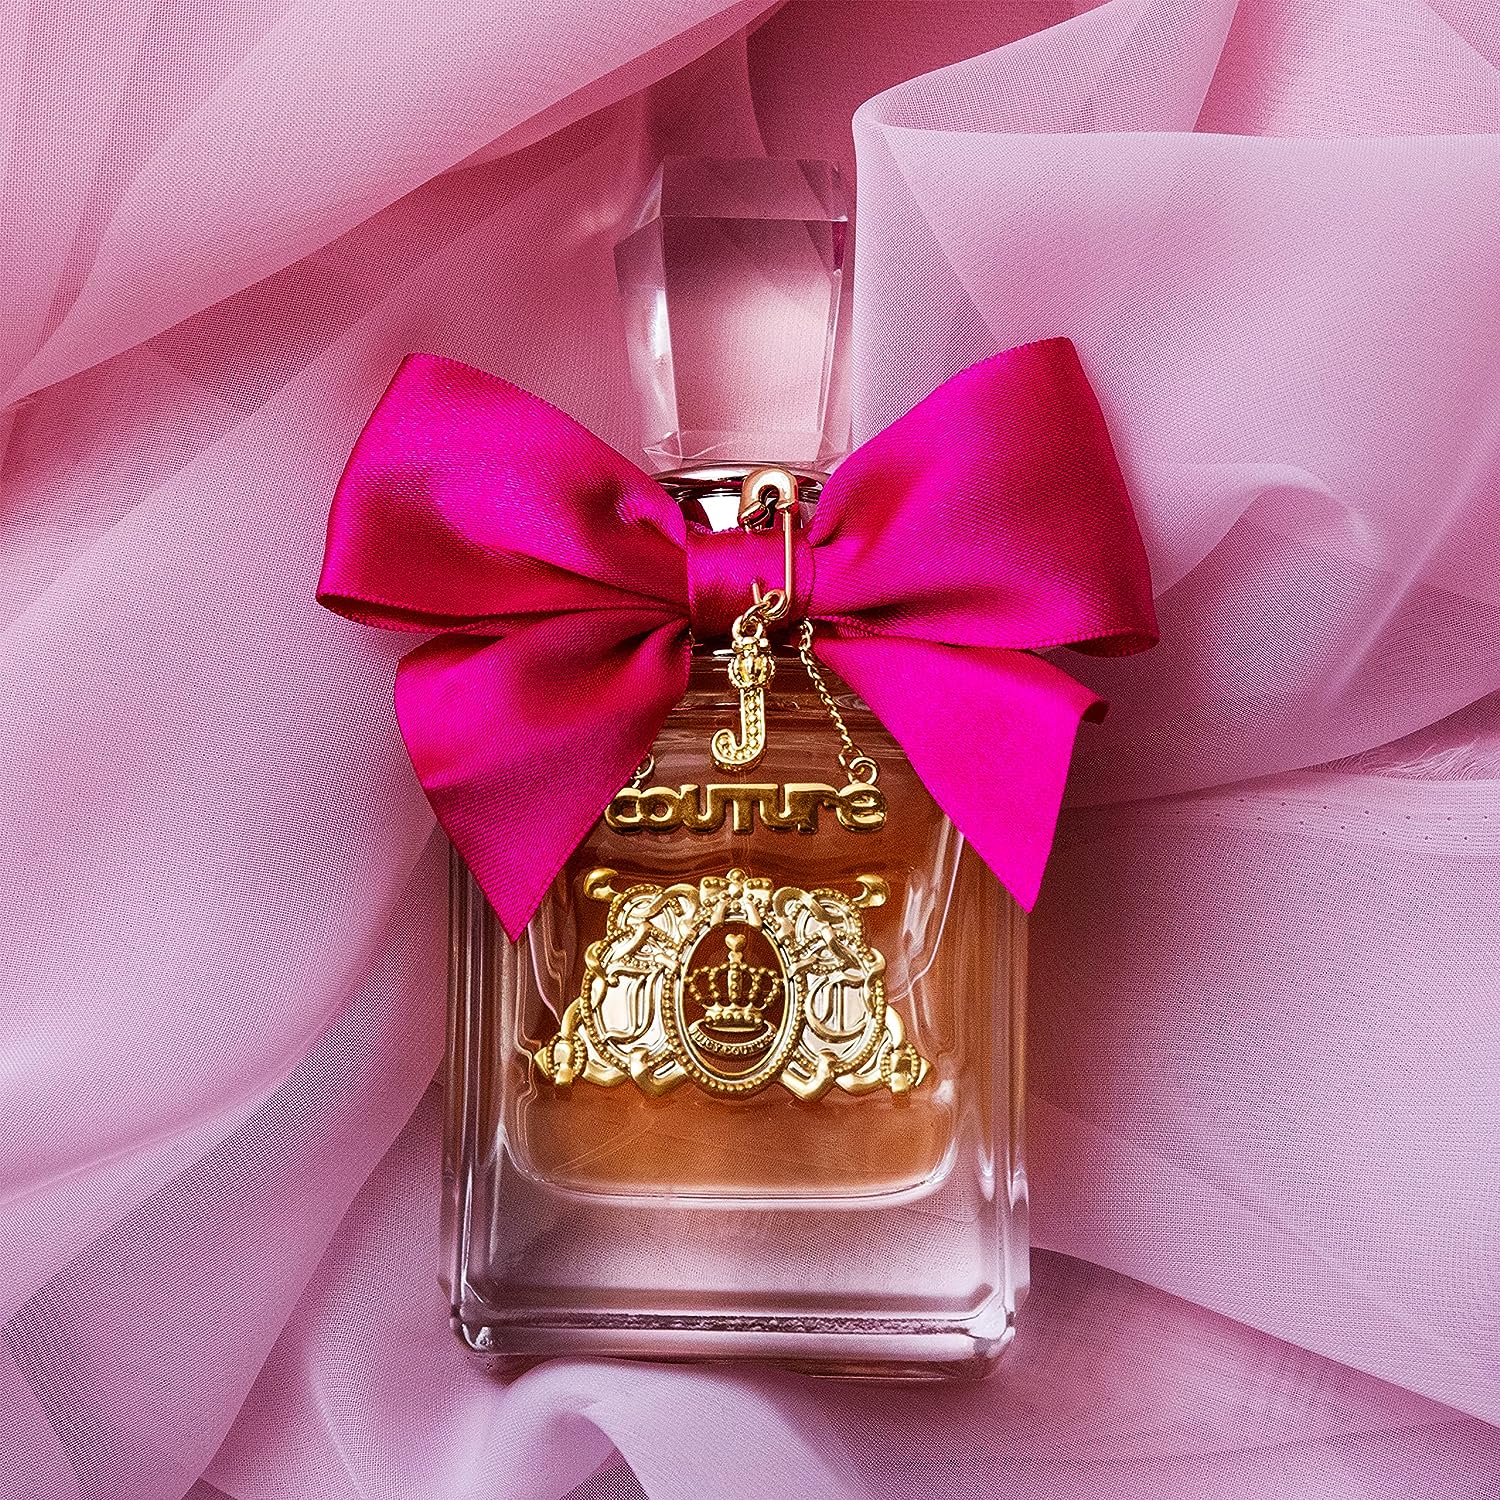 Juicy Couture – Le Parfum